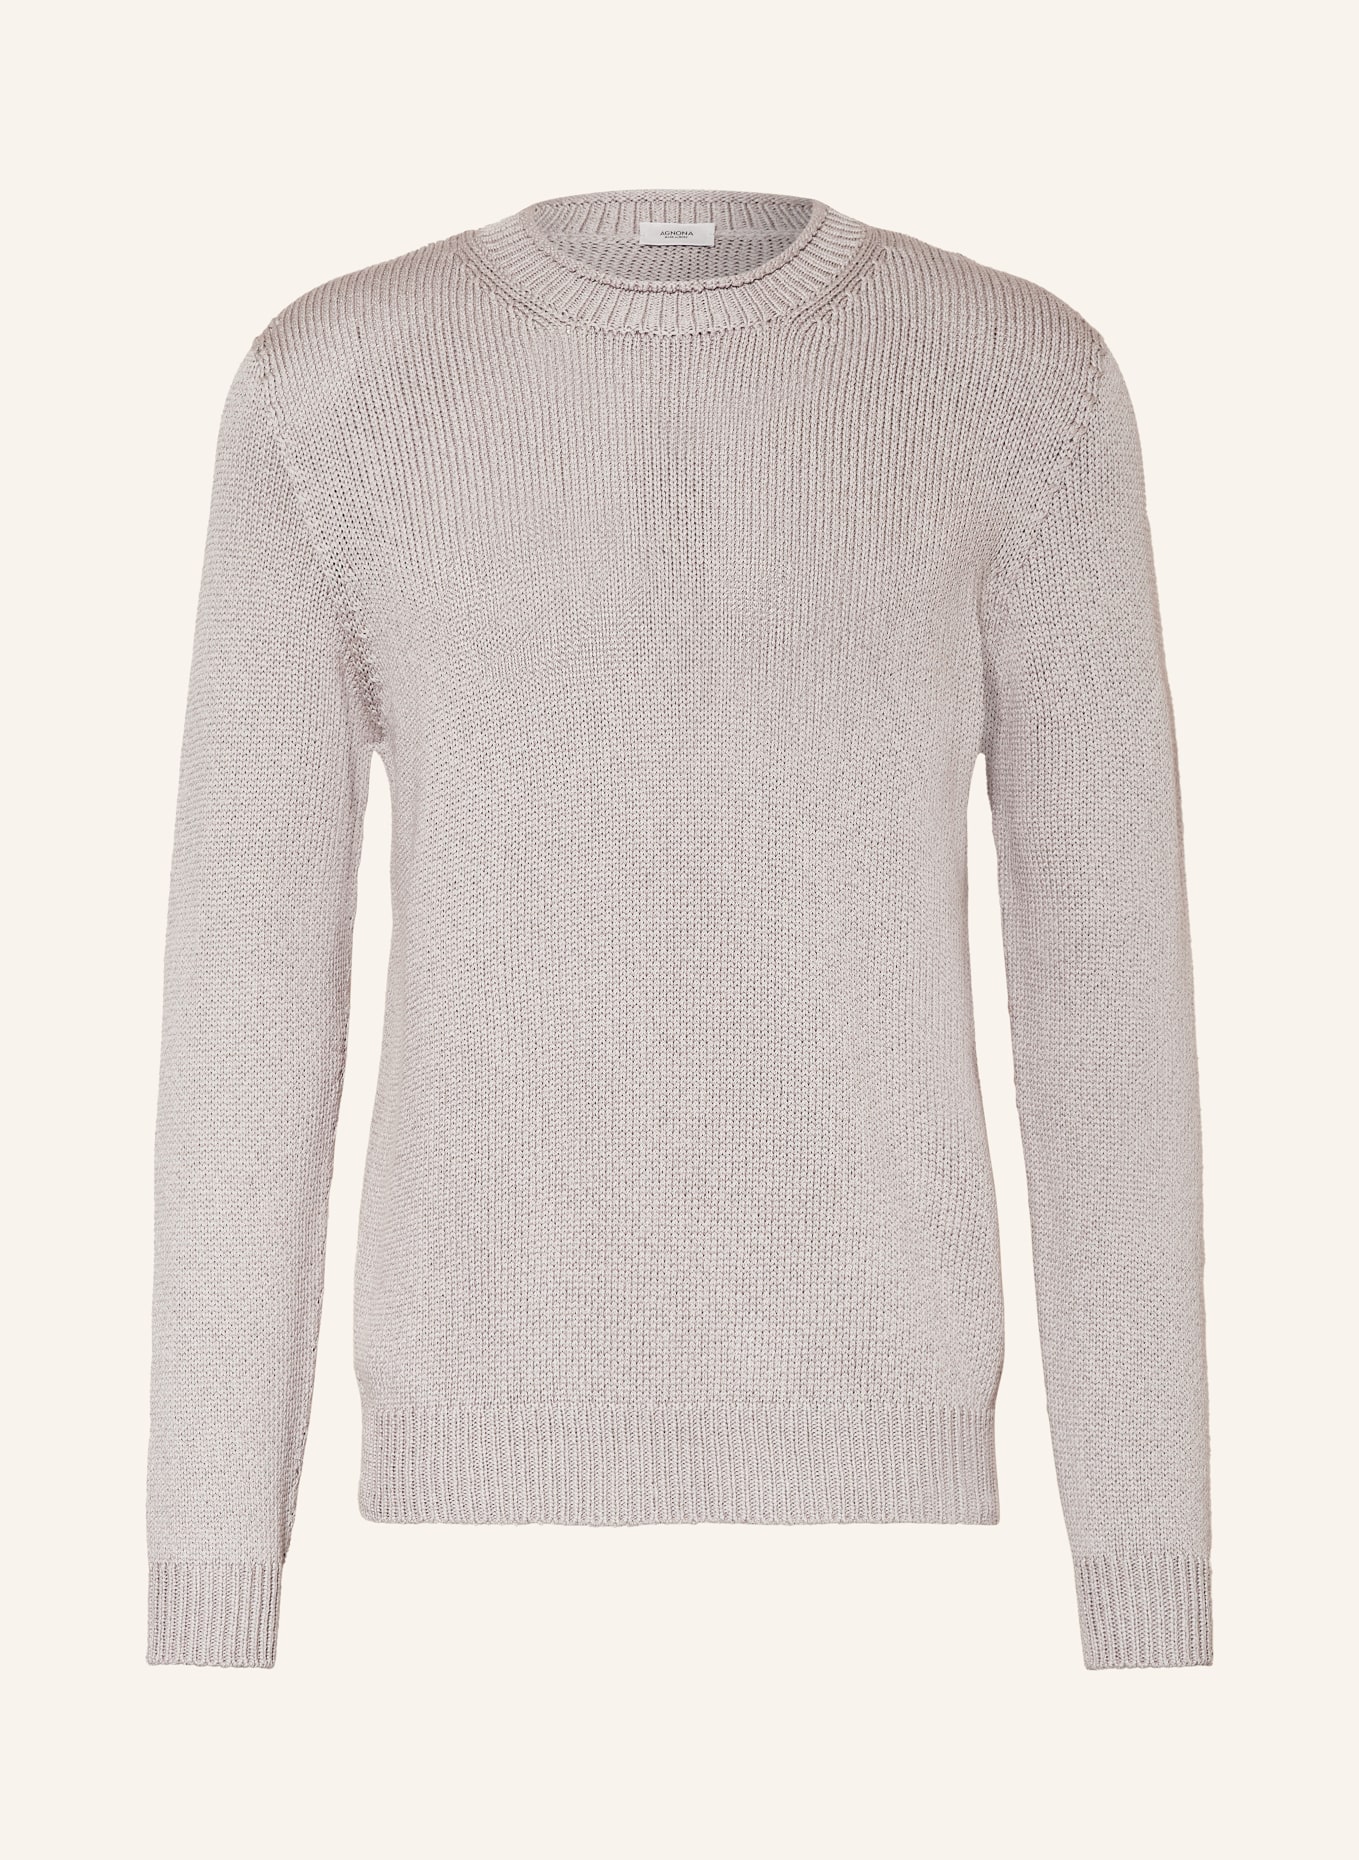 AGNONA Pullover, Farbe: BEIGE (Bild 1)